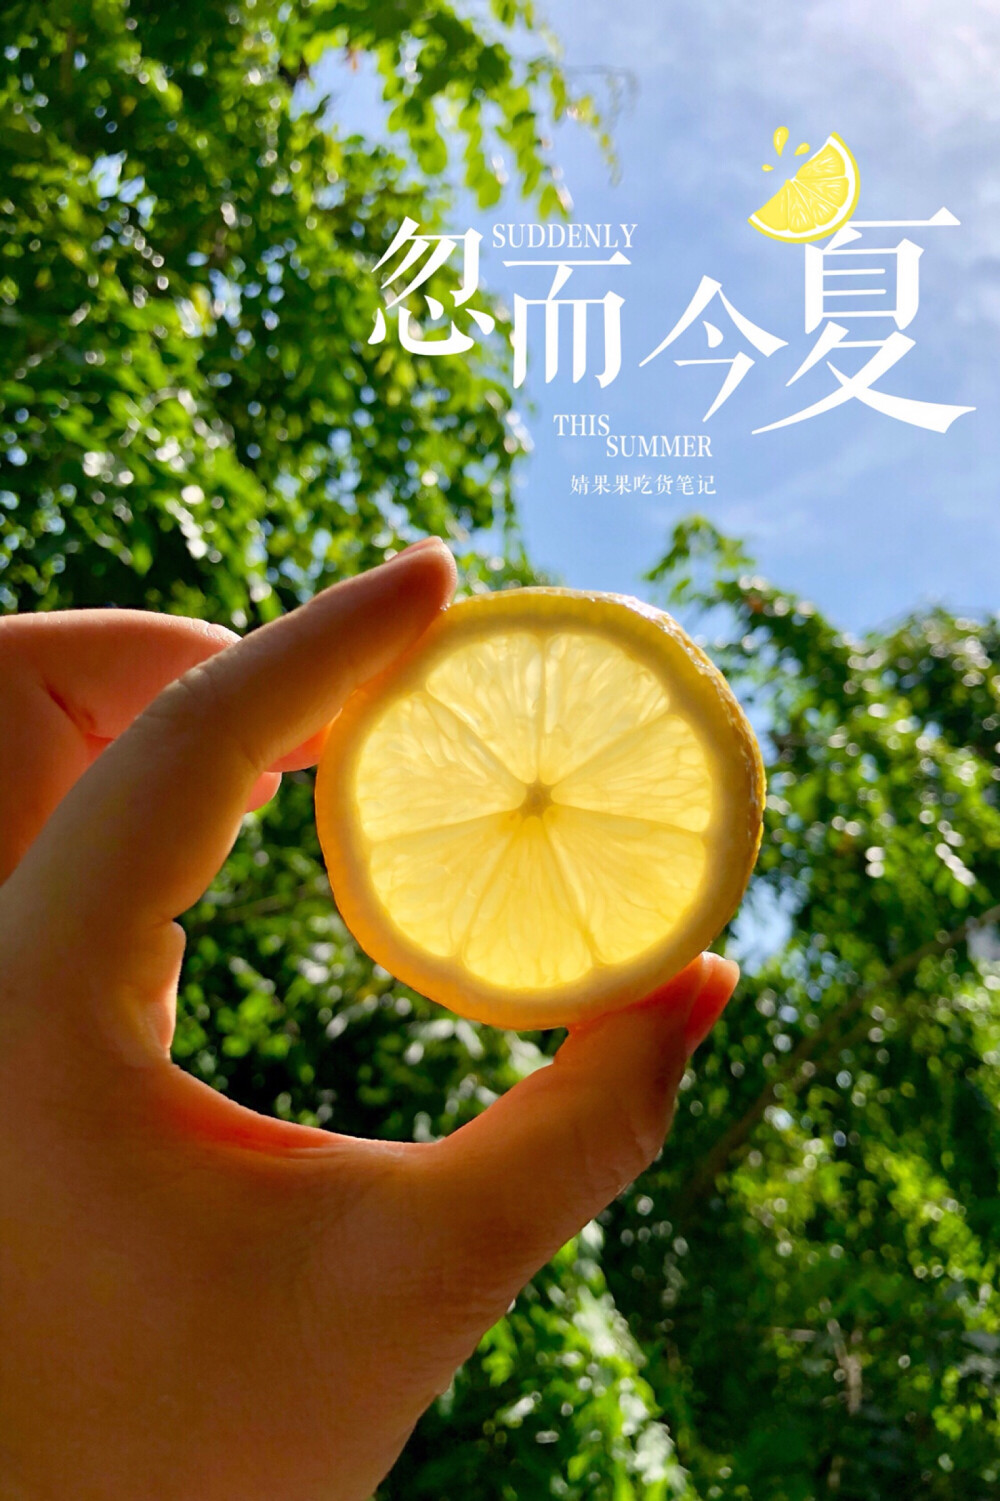 「婧果果吃货笔记.128」柠檬要吃就吃新鲜的，可是吃不完也不要紧。
吃不完的柠檬可以把它切片，然后平放在阳光充足处晒干。